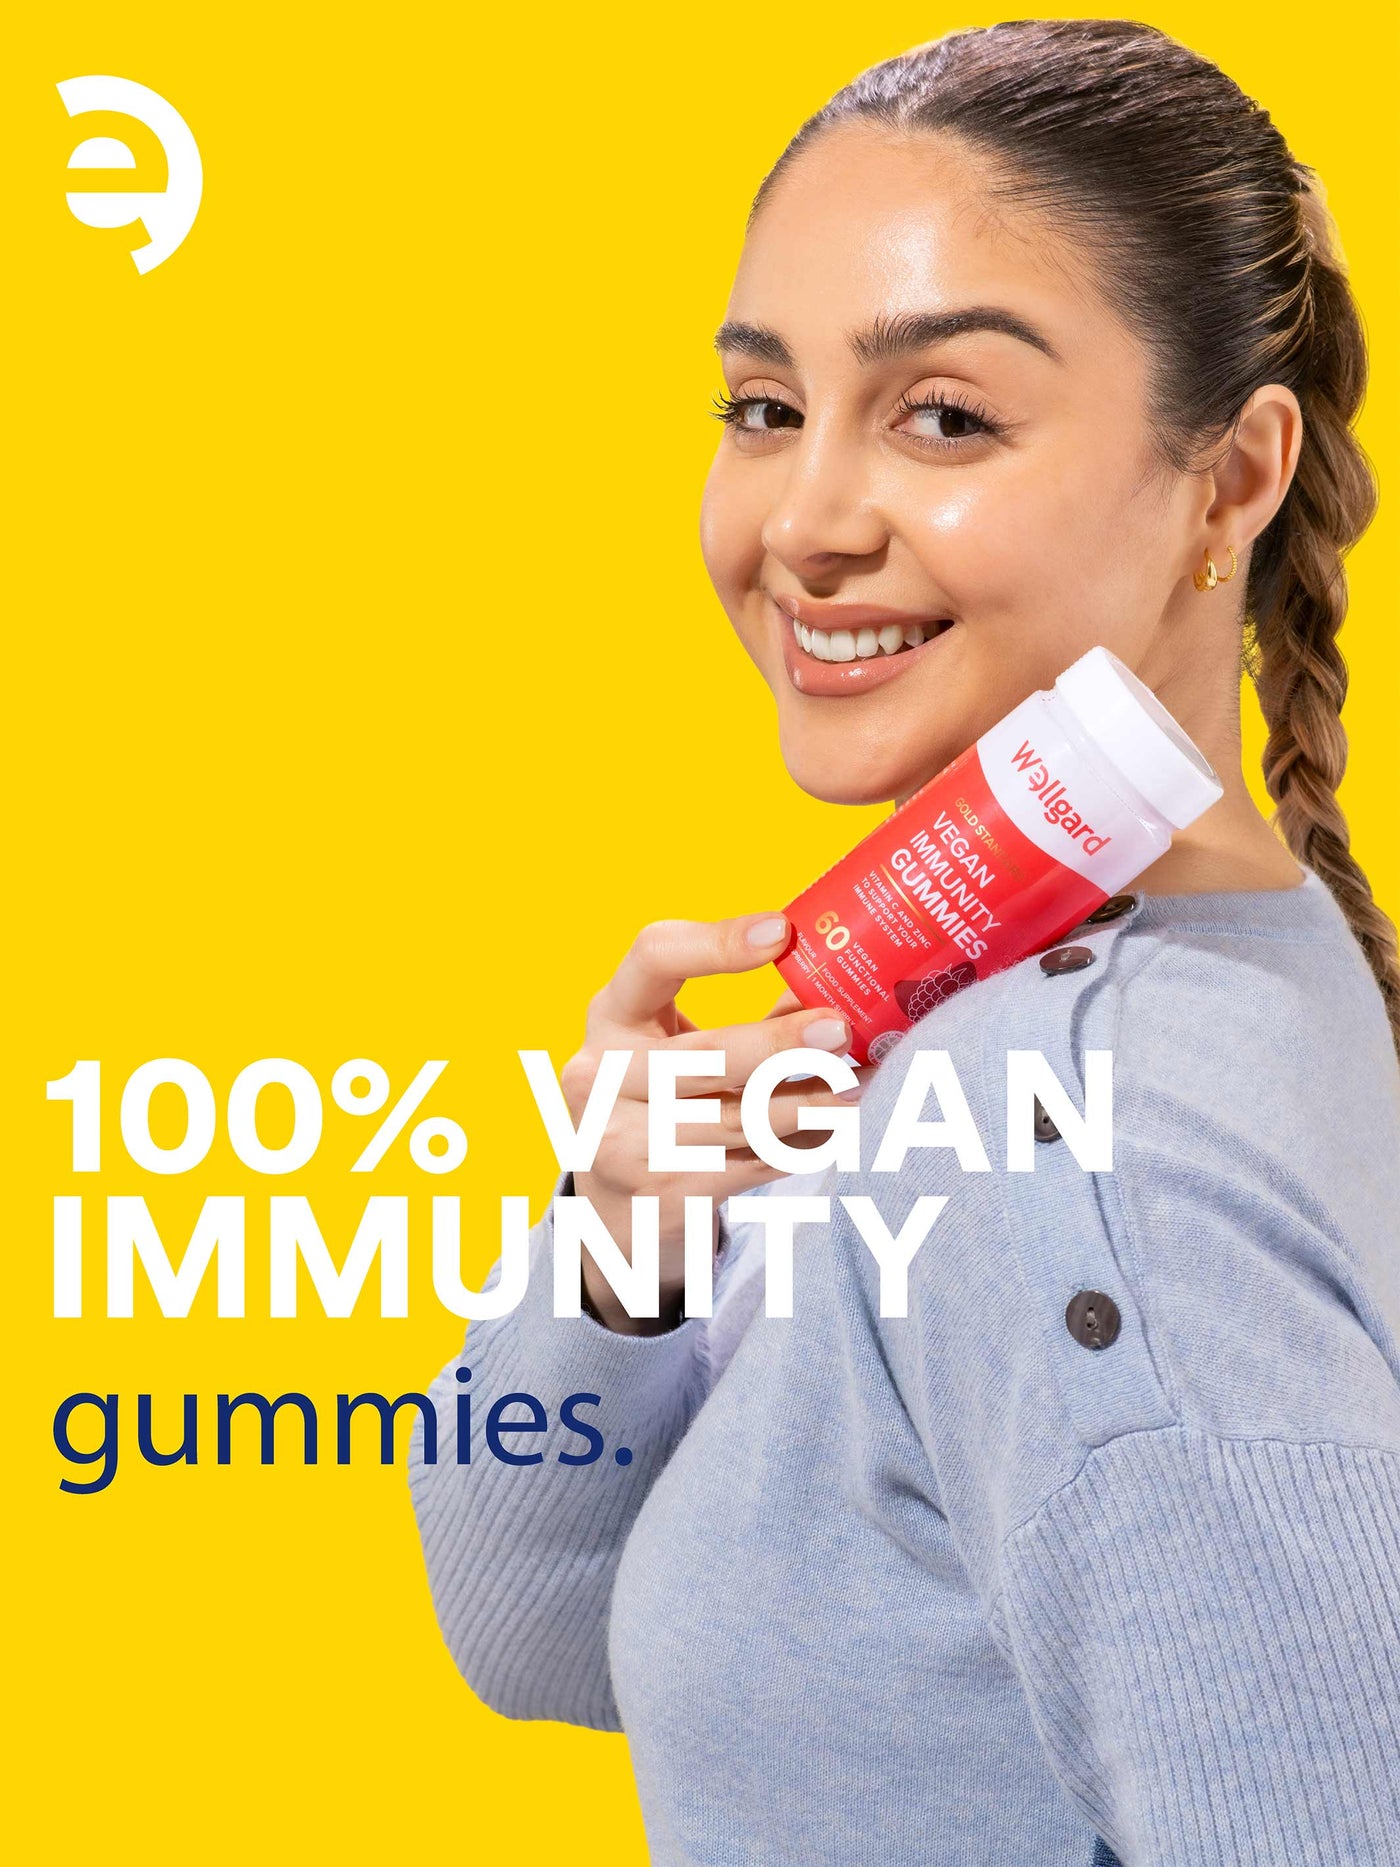 Immunity Gummies with Vitamin C, Zinc & Selenium